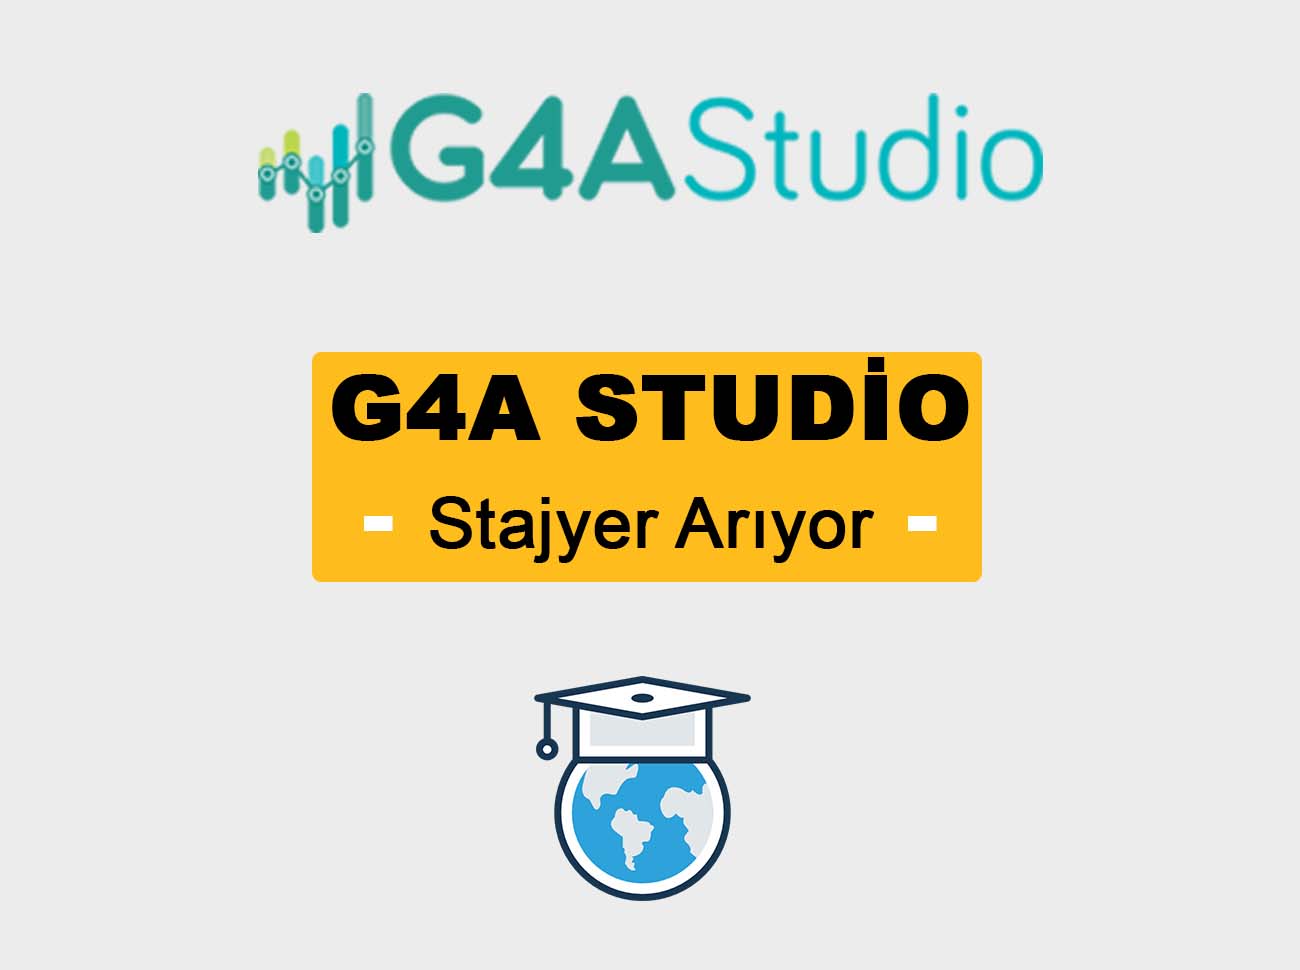 G4A Studio Dijital Pazarlama Stajyeri Arıyor